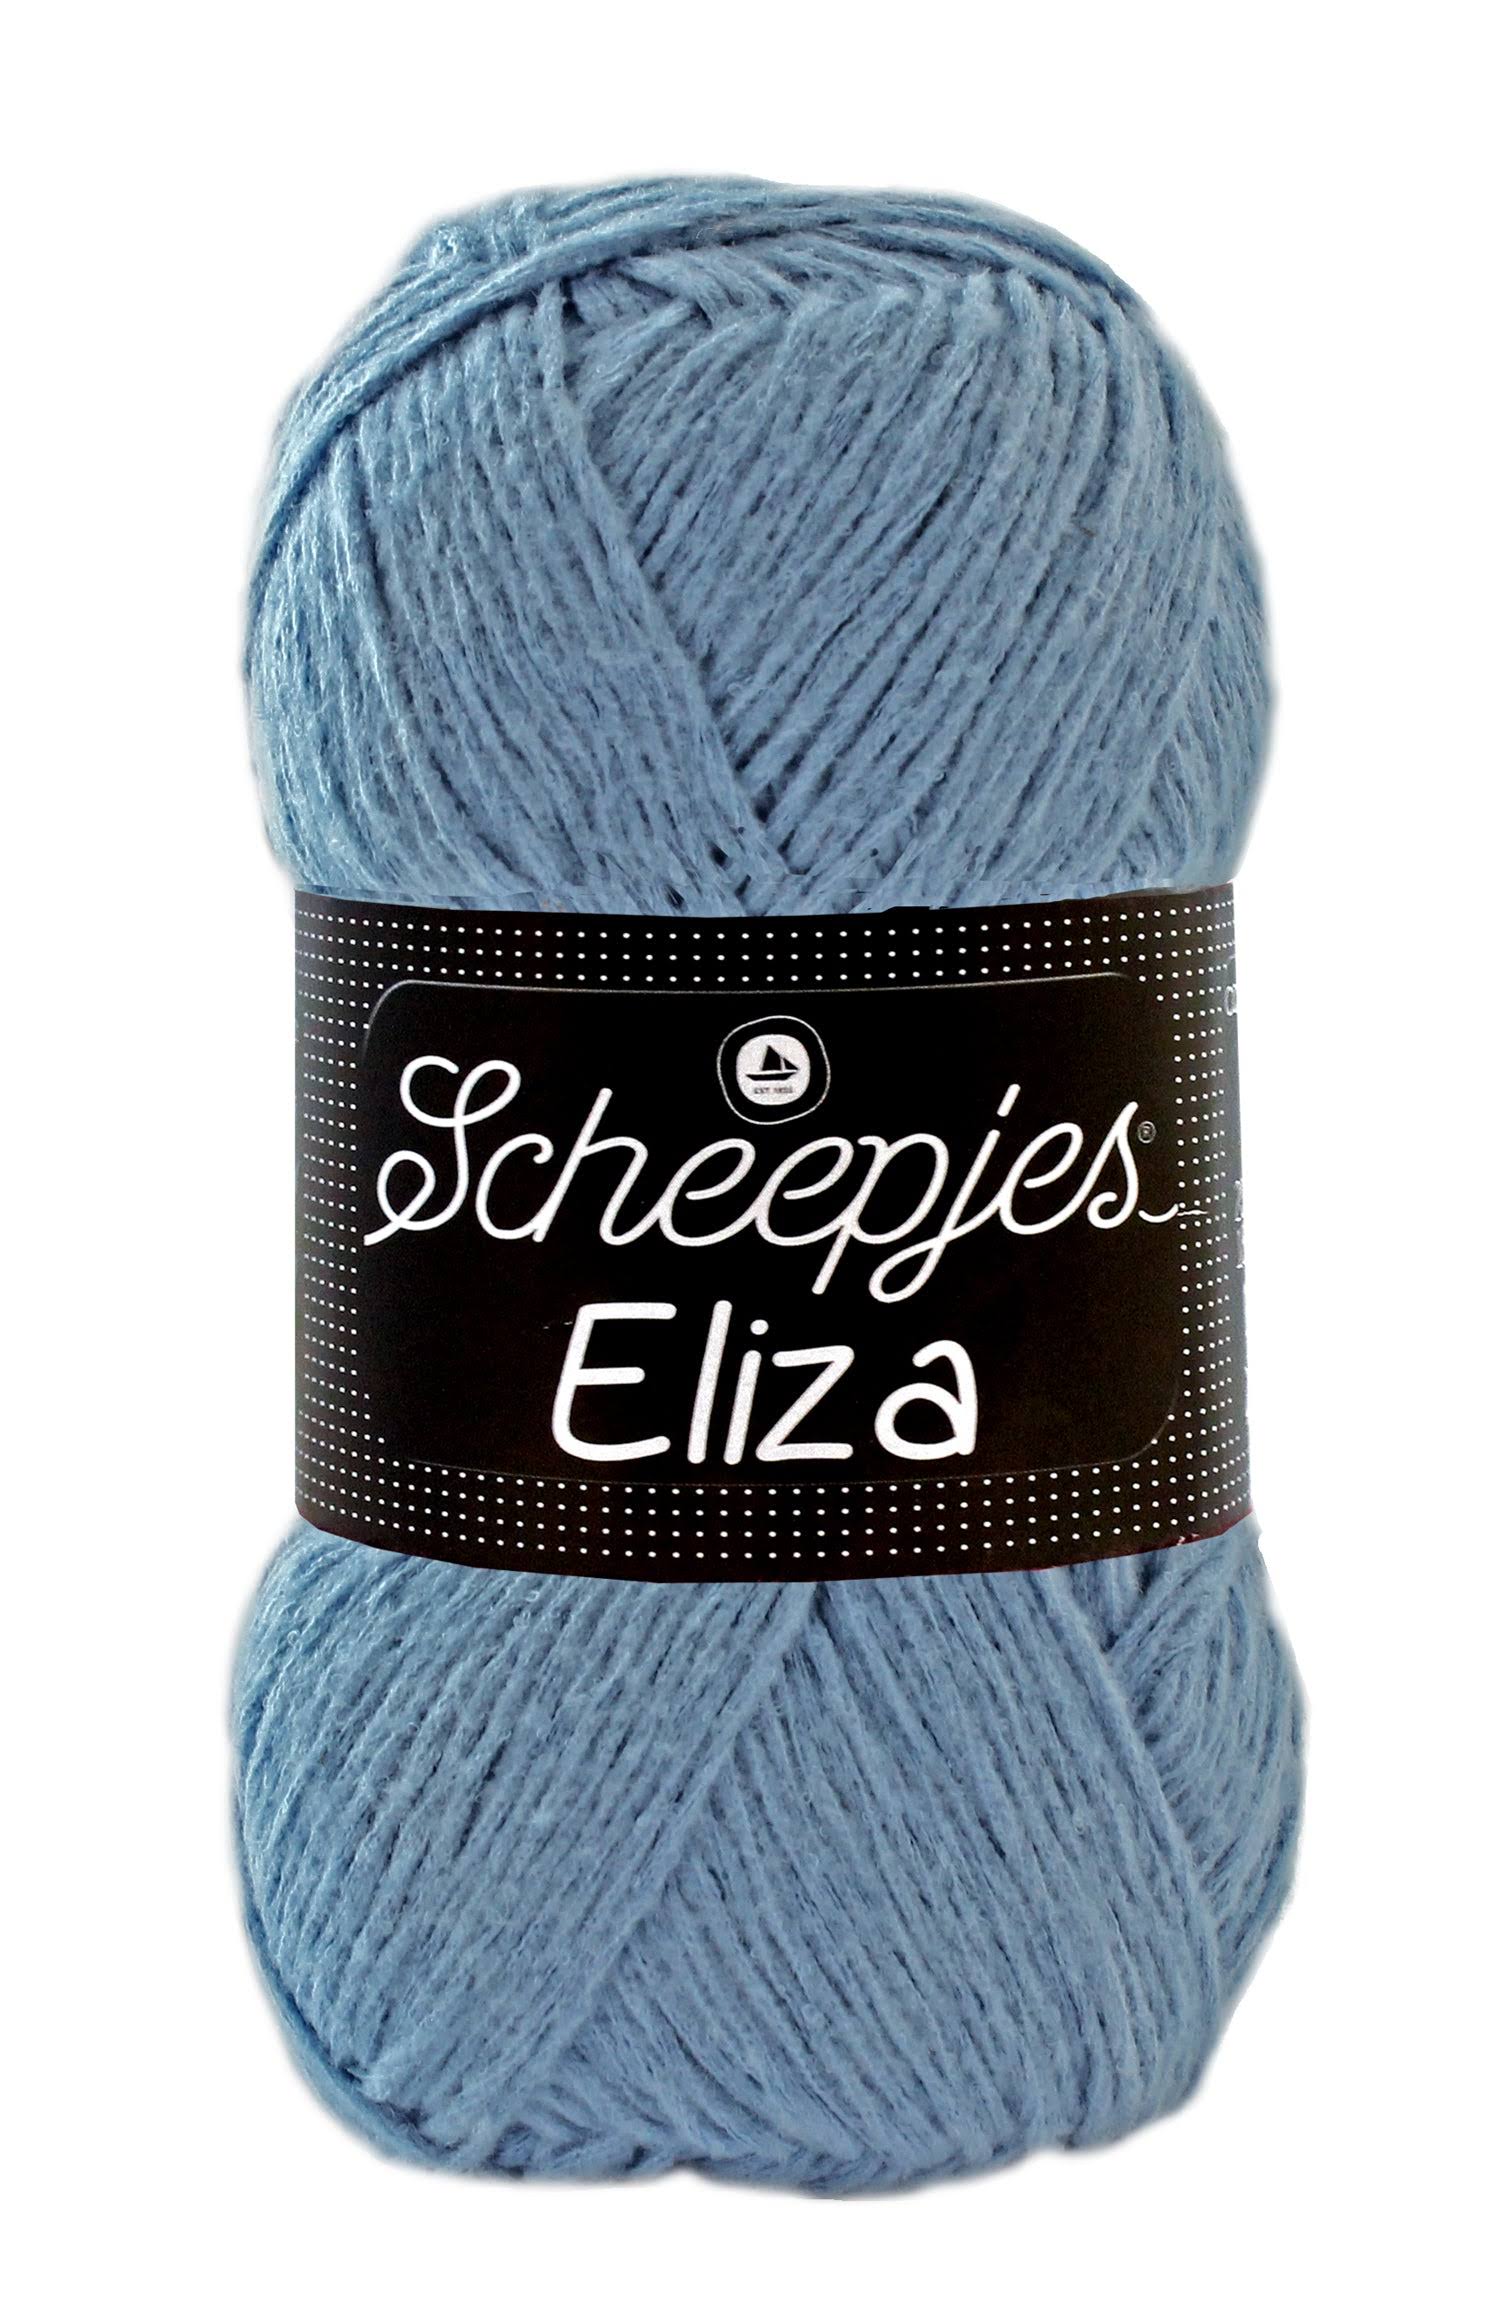 Scheepjes Eliza DK Weight Blue Yarn 100g - 216 Cornflower